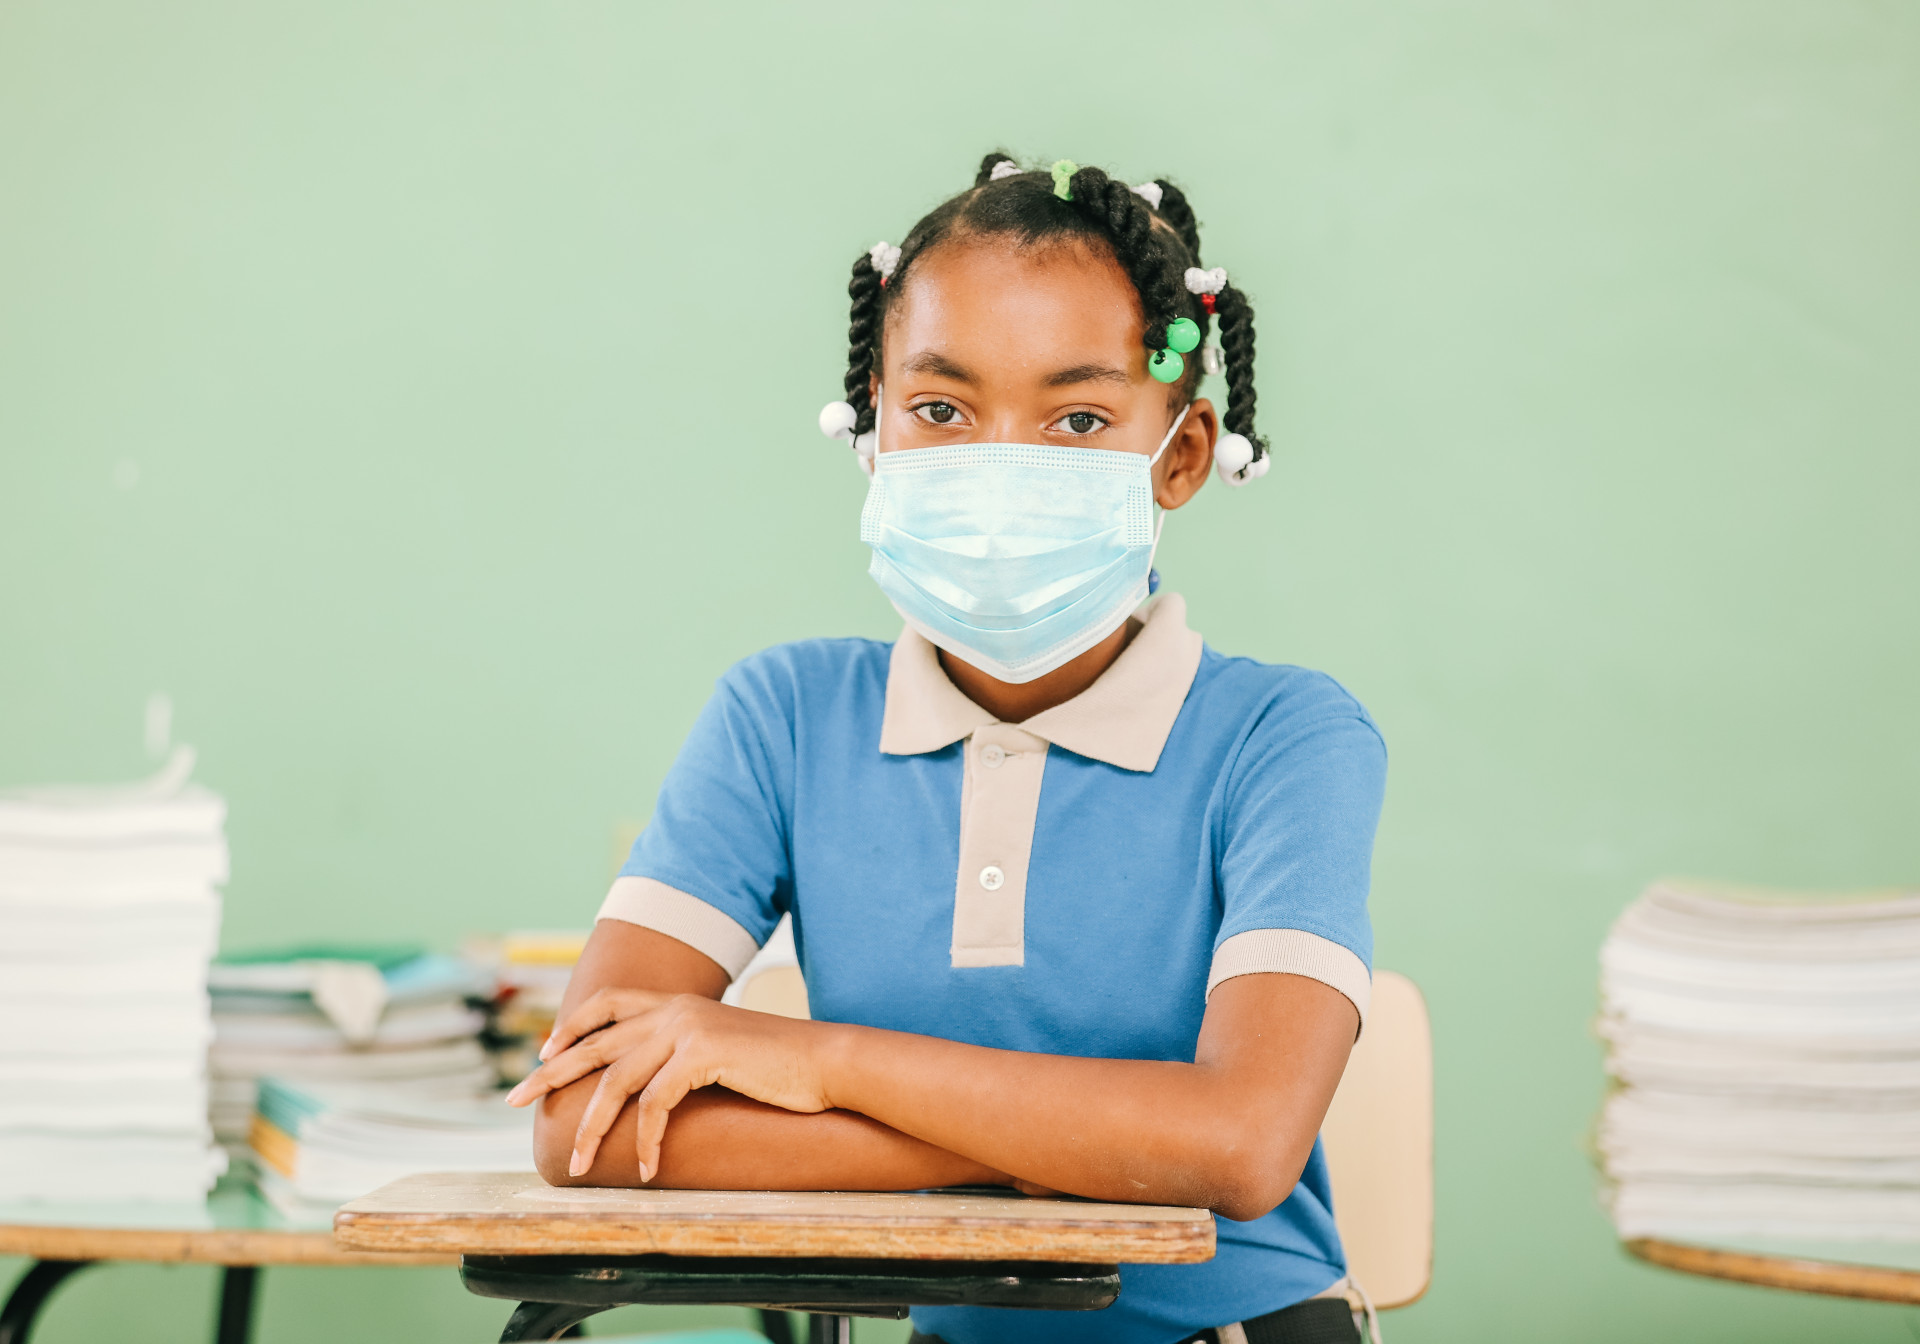 REPÚBLICA DOMINICANA: Presidente Abinader encabeza el retorno gradual a la de educación presencial tras un año de pandemia